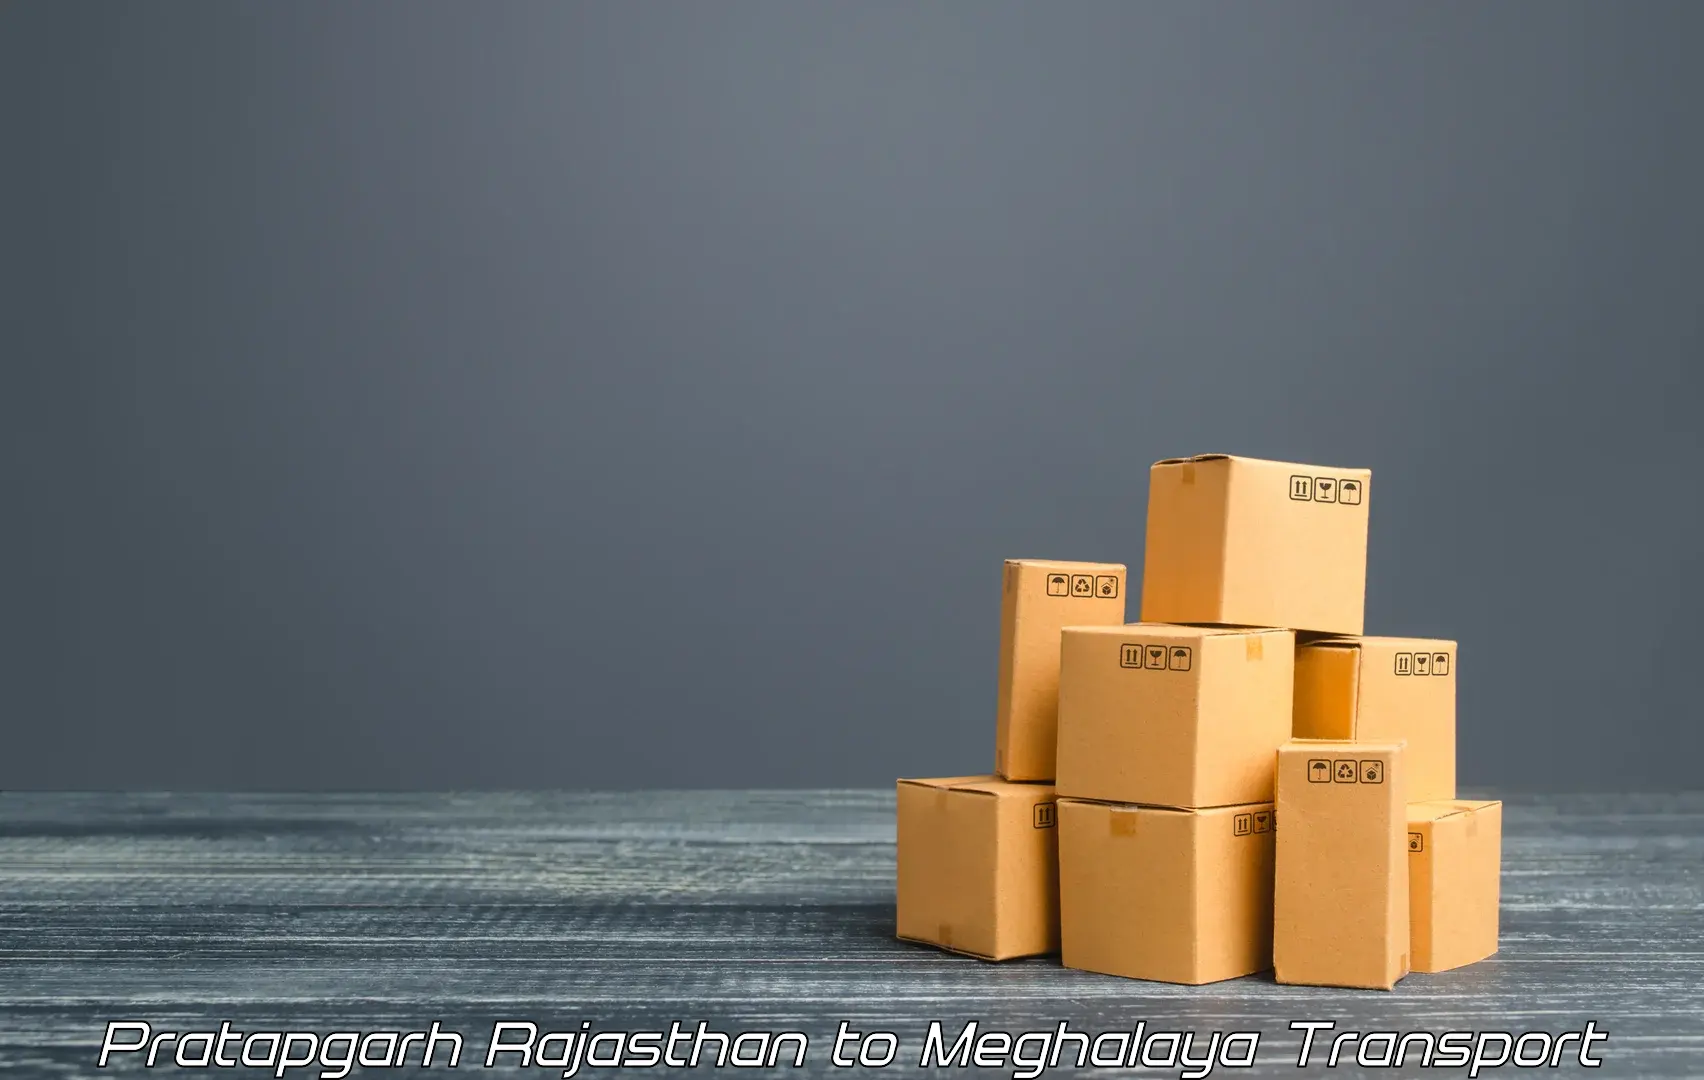 Cargo transportation services Pratapgarh Rajasthan to Meghalaya